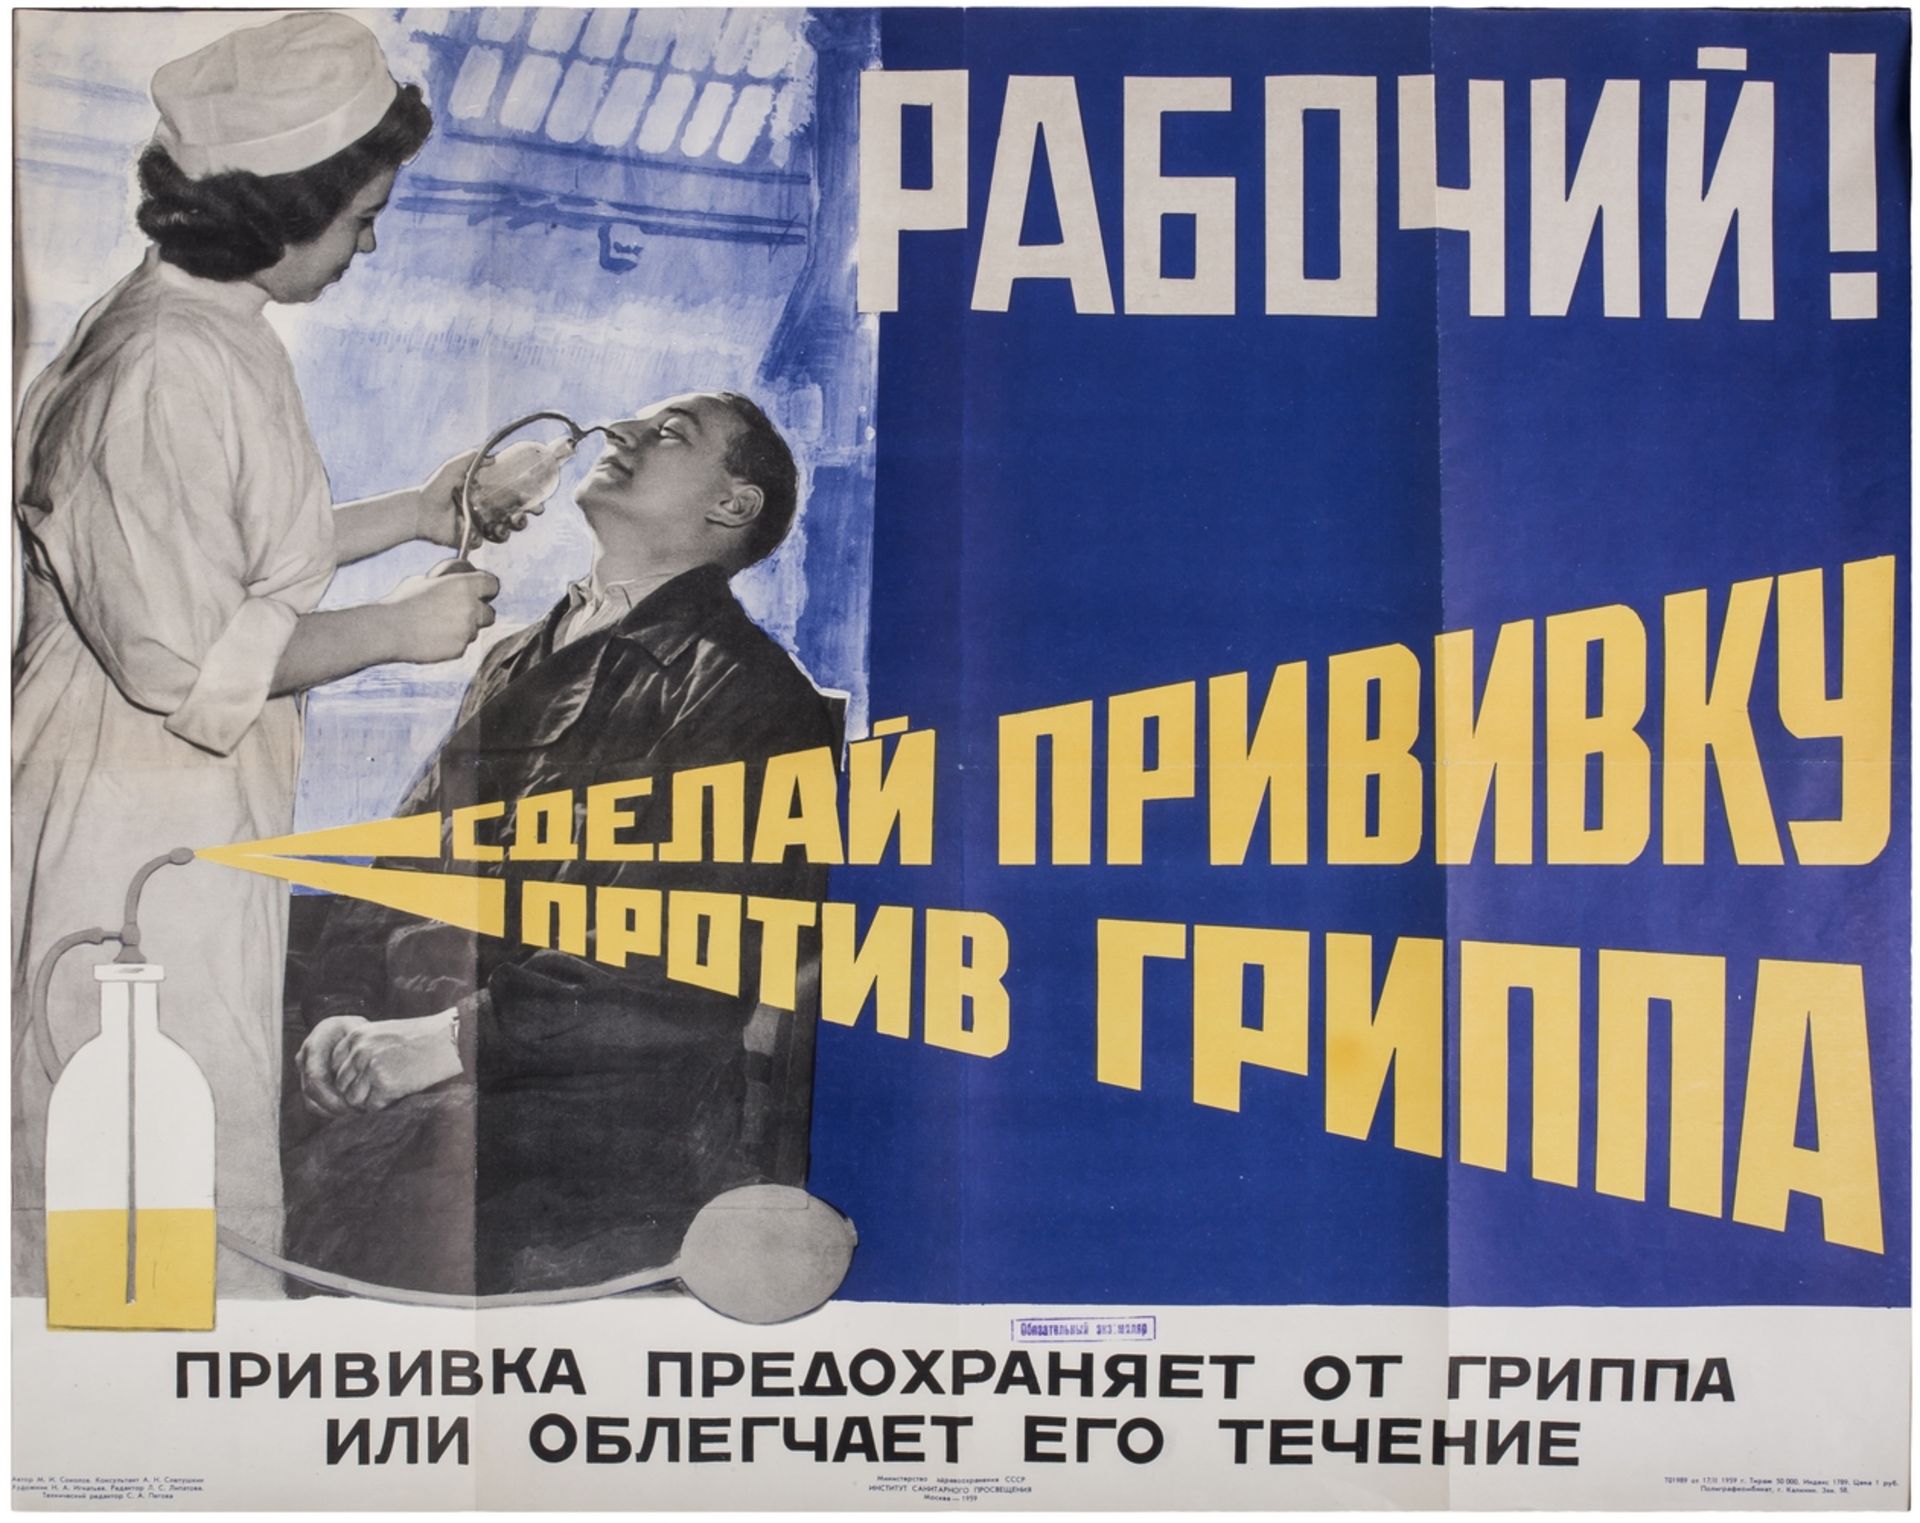 [Soviet art]. Ignatiev, N. Poster "Working man! Get a flu shot". - Moscow, 1959.